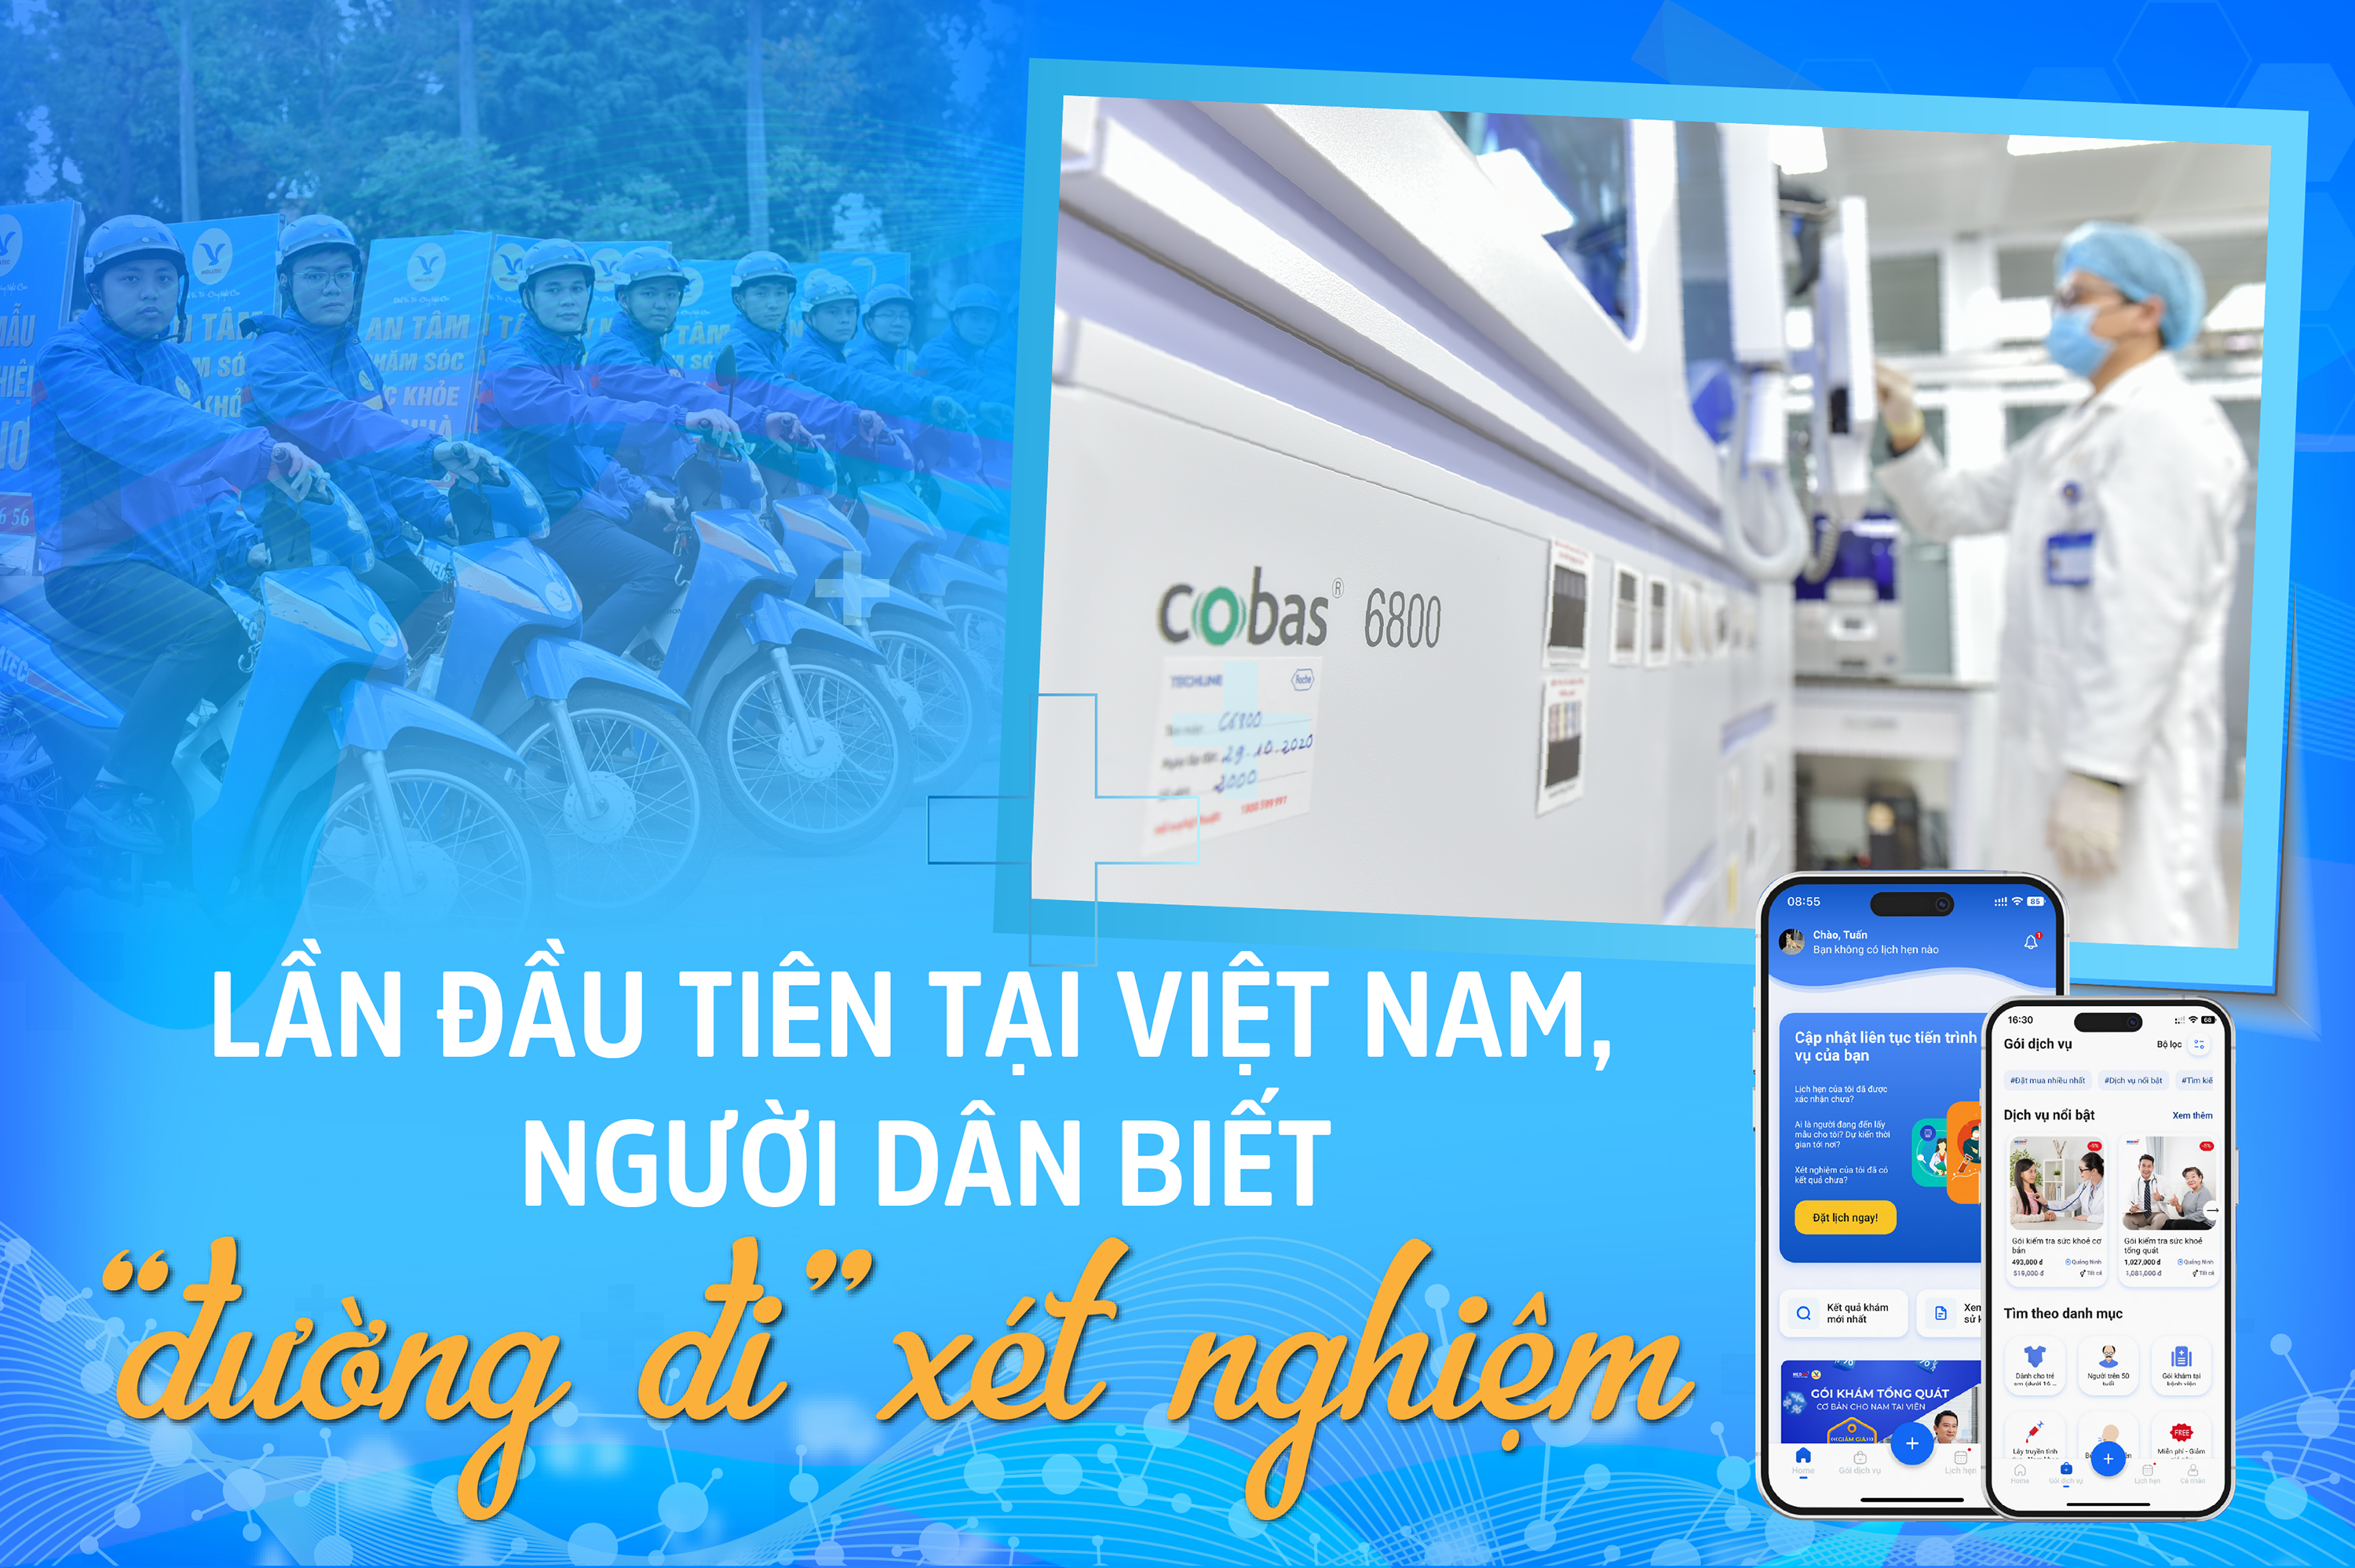 Lần đầu tiên tại Việt Nam, người dân biết “đường đi” xét nghiệm - Ảnh 1